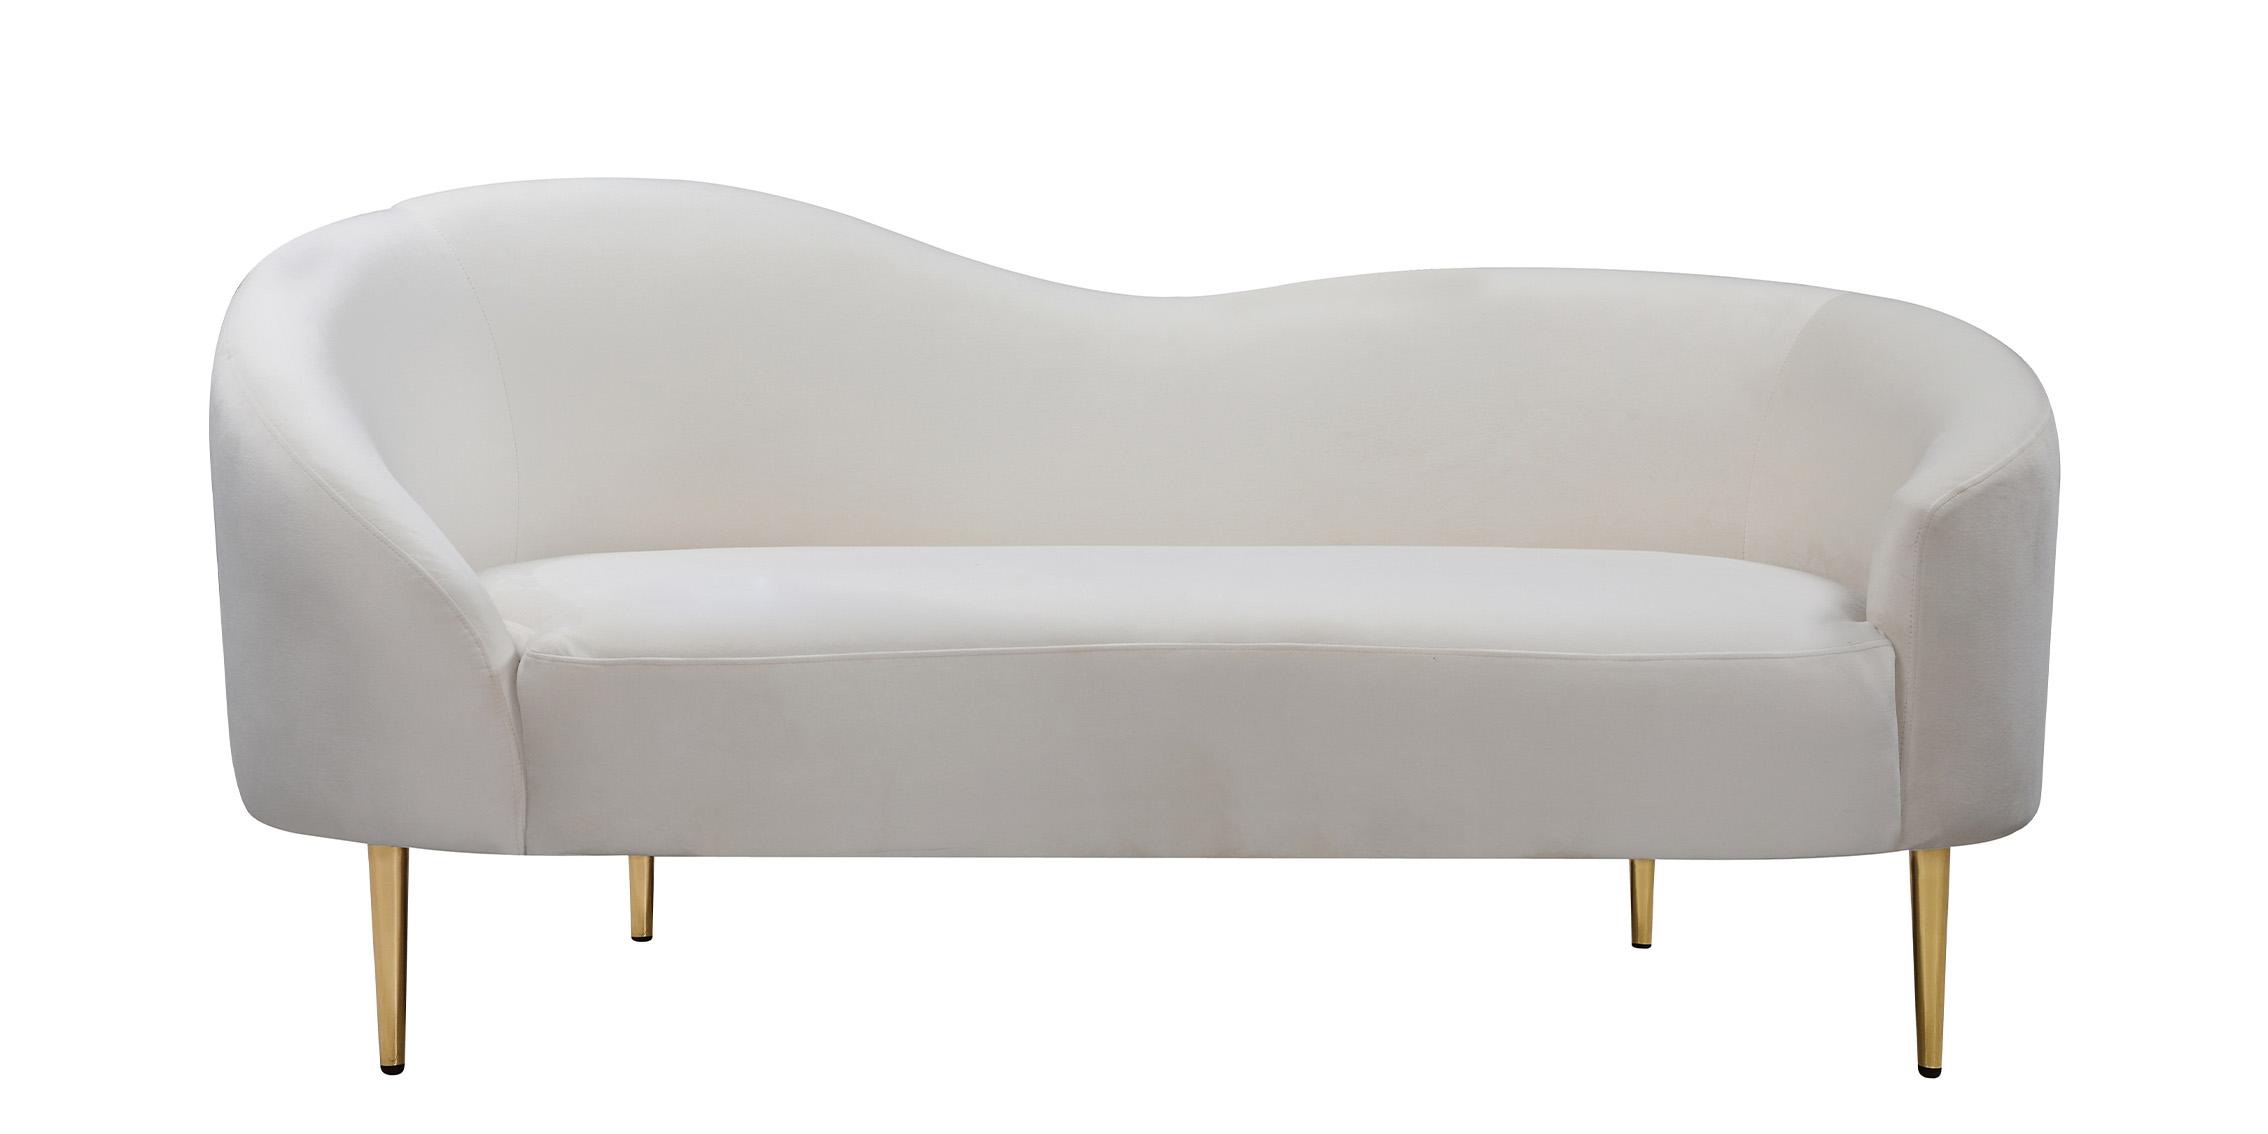 

    
Meridian Furniture RITZ 659Cream-L Loveseat Cream 659Cream-L
